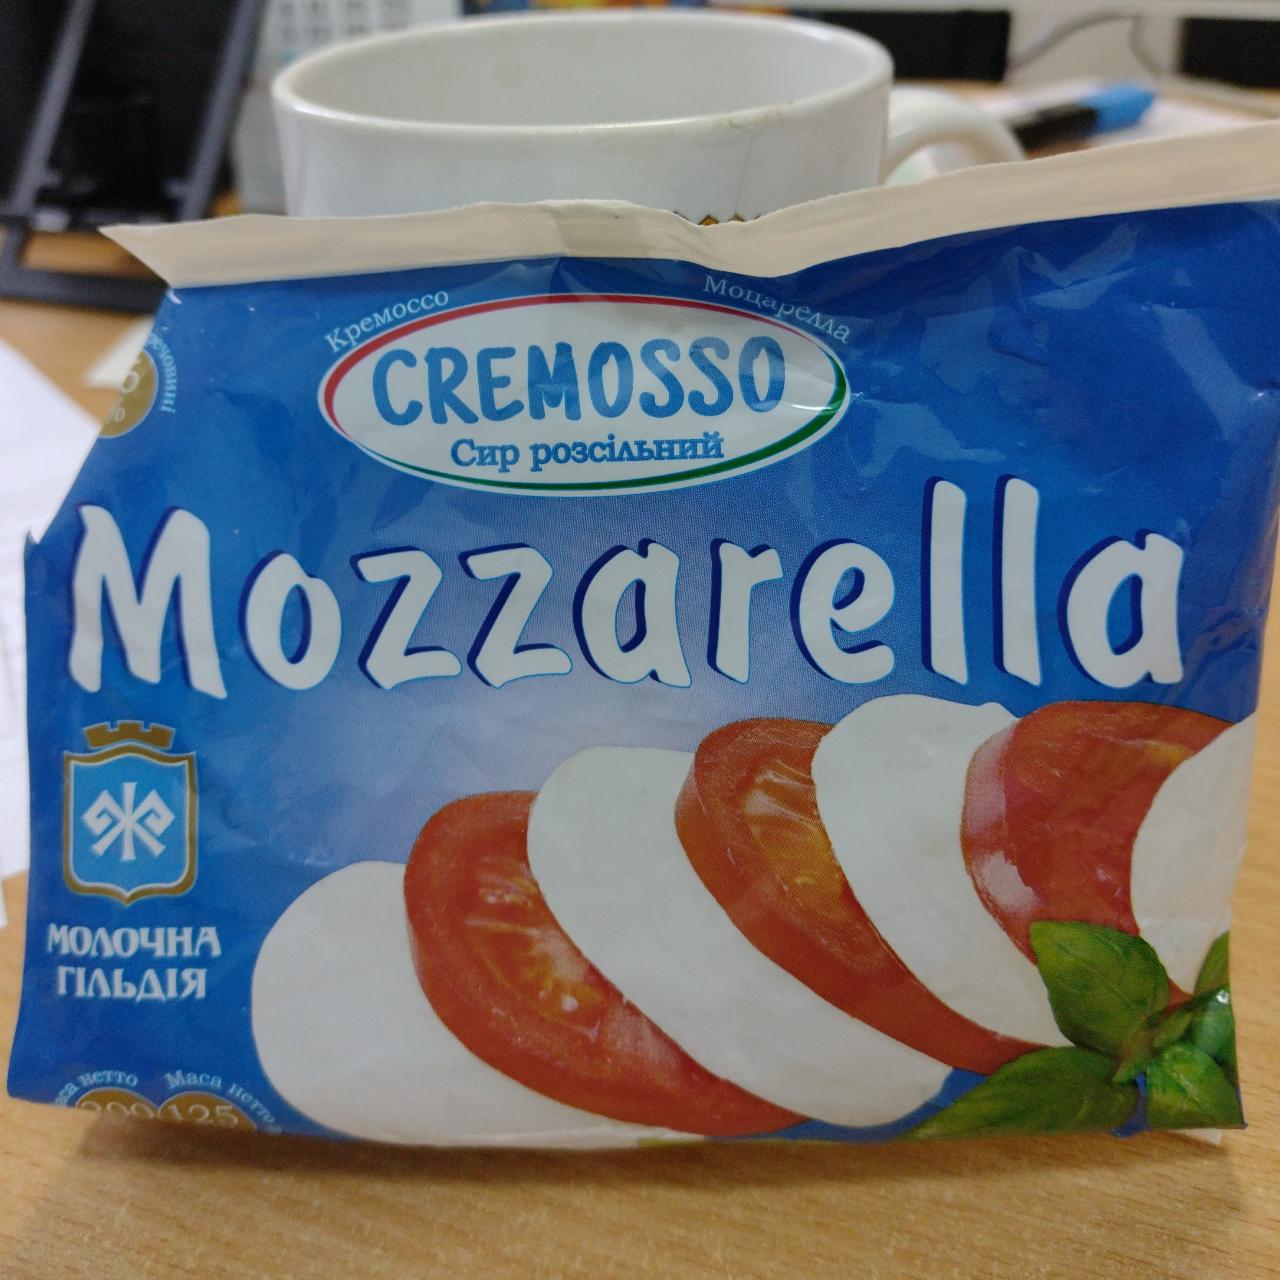 Фото - Сир розсільний Mozzarella Cremosso Молочна гільдія